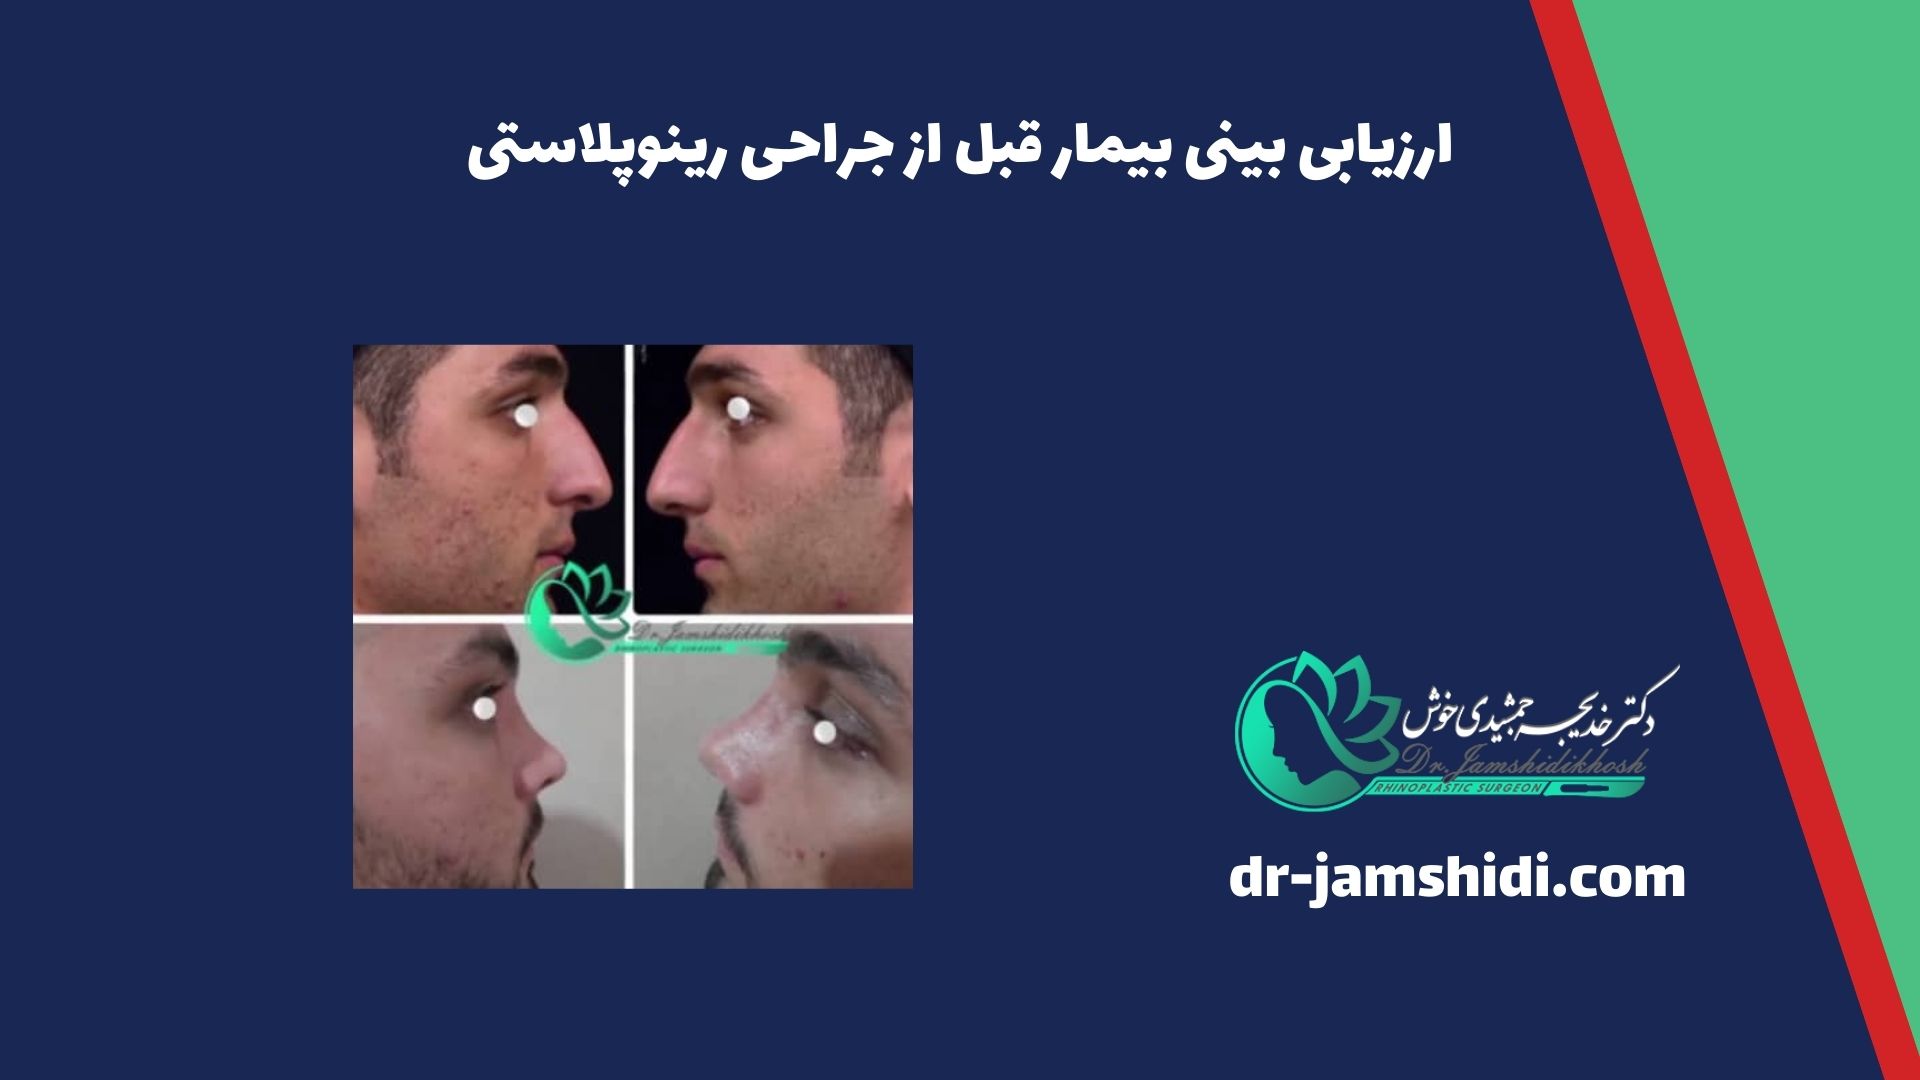 ارزیابی بینی بیمار قبل از جراحی رینوپلاستی